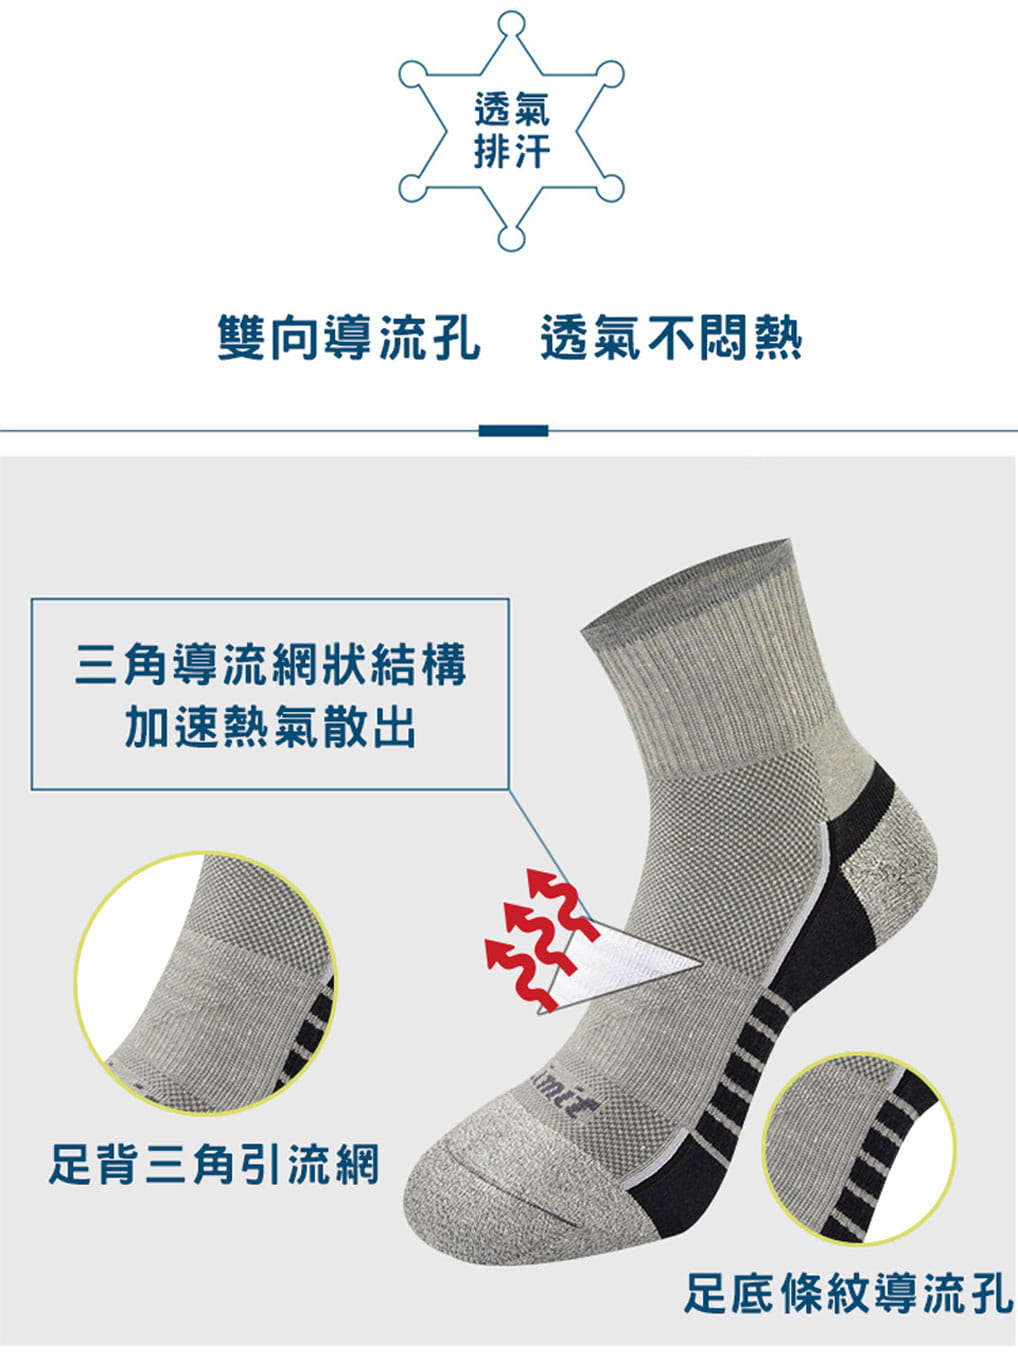 【力美特機能襪】條紋導流運動襪(灰) 5